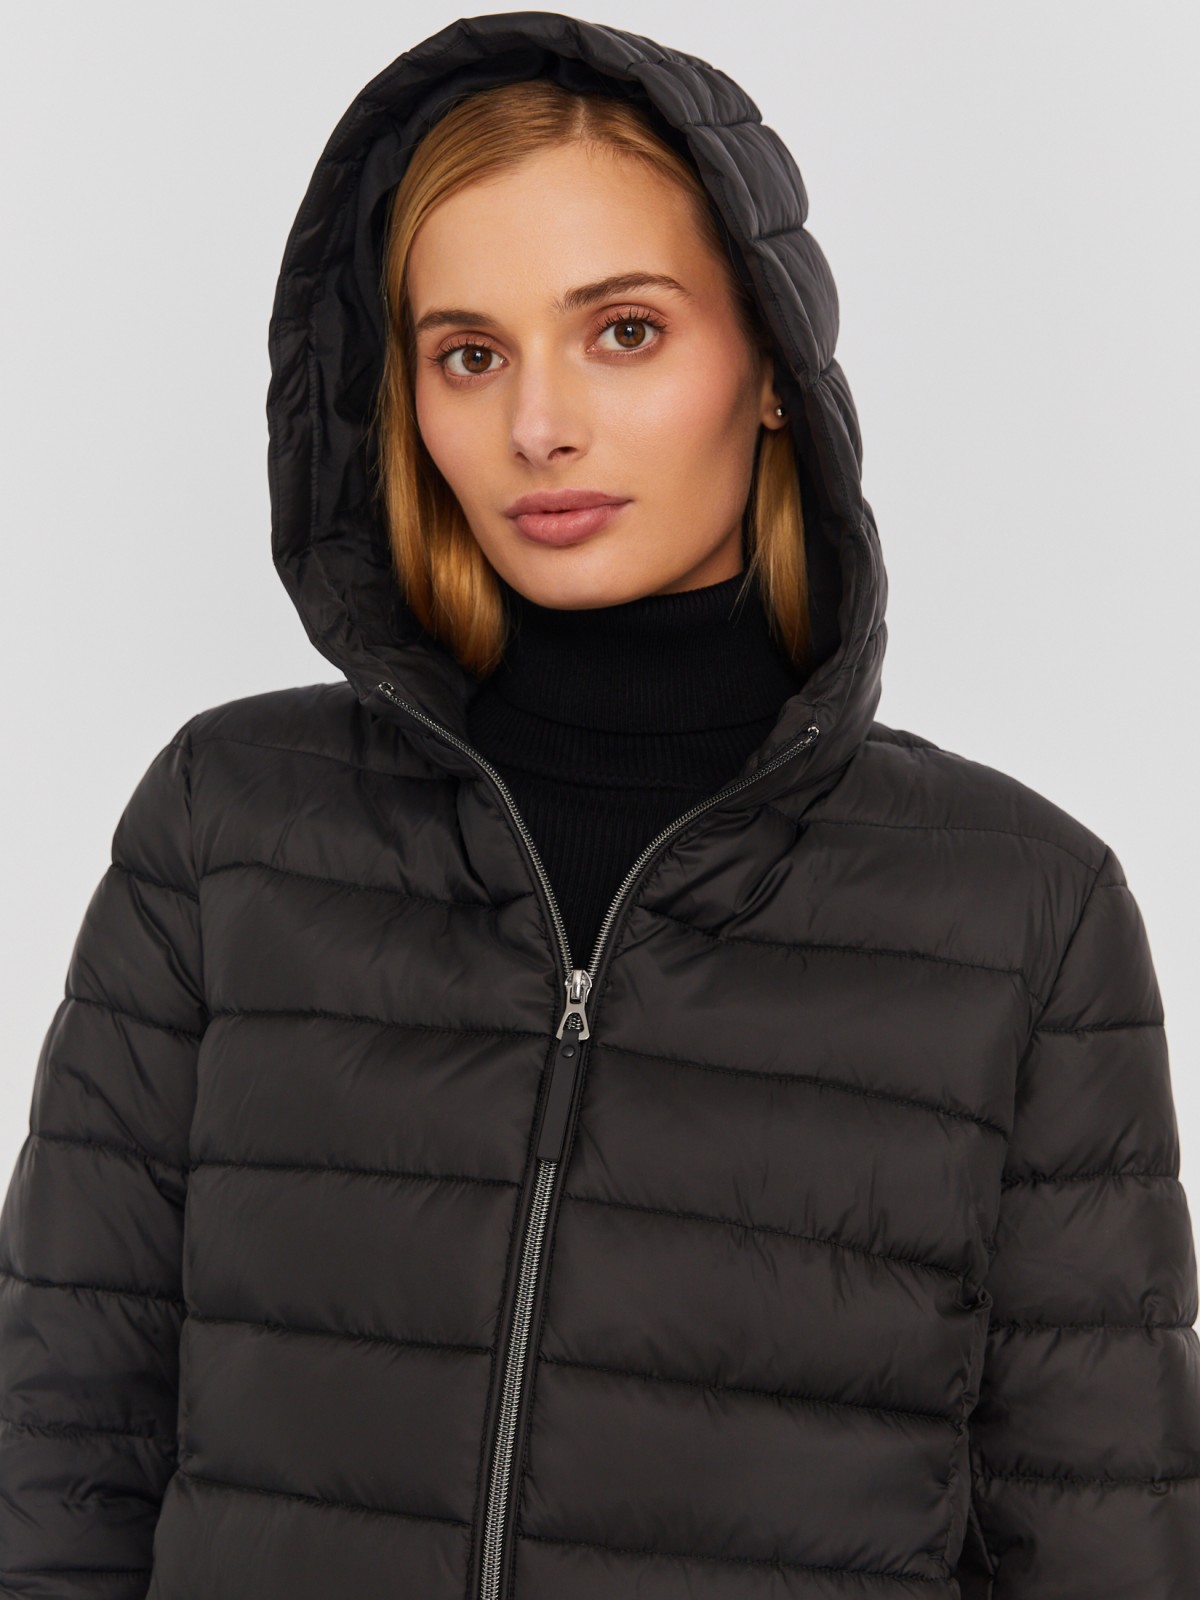 Утеплённая стёганая куртка укороченного фасона с капюшоном zolla 023335112224, цвет черный, размер S - фото 4